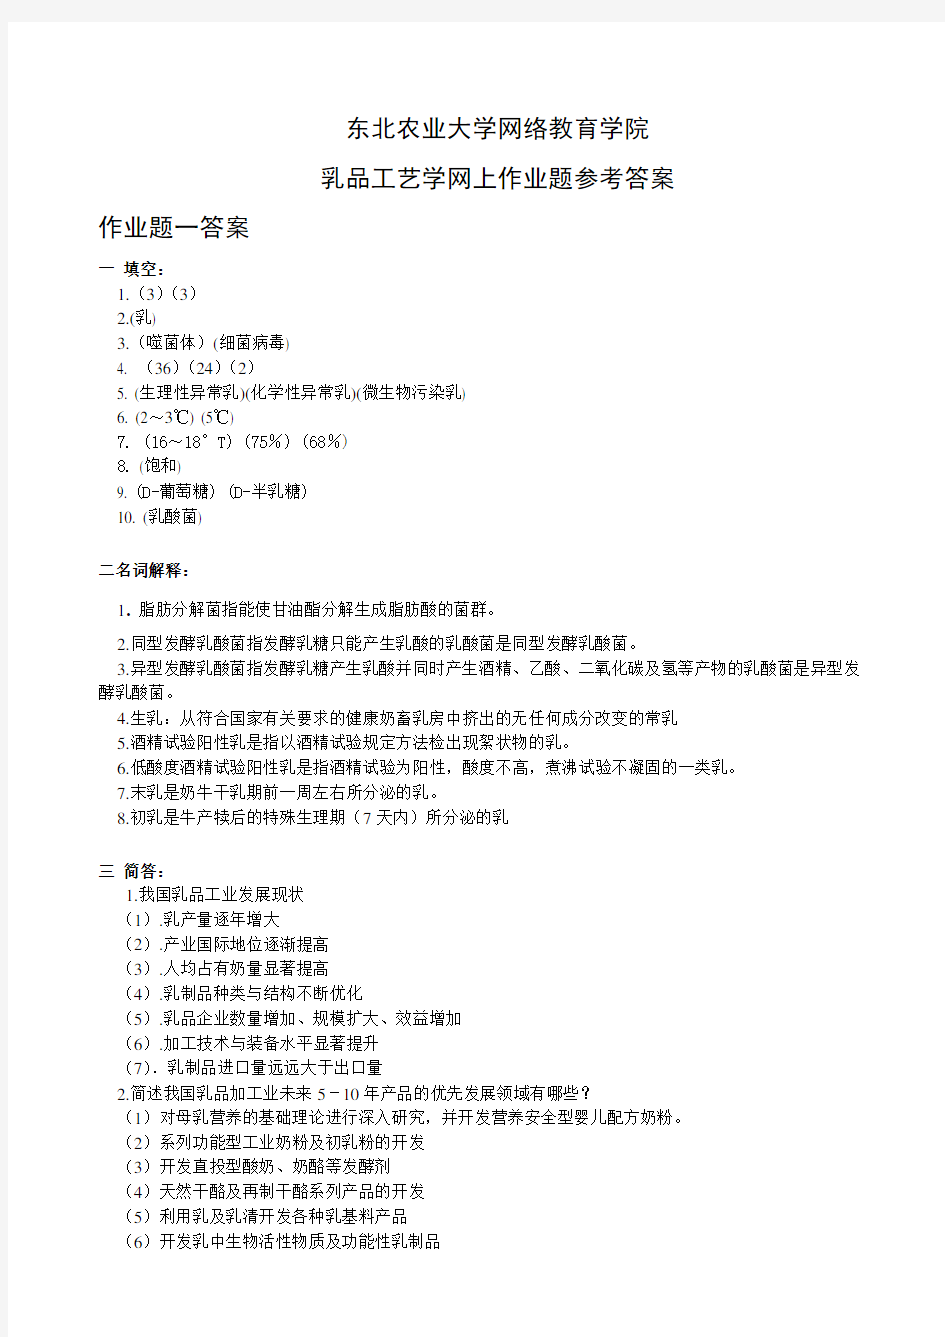 (整理)乳品工艺学网上作业题参考答案20121210.